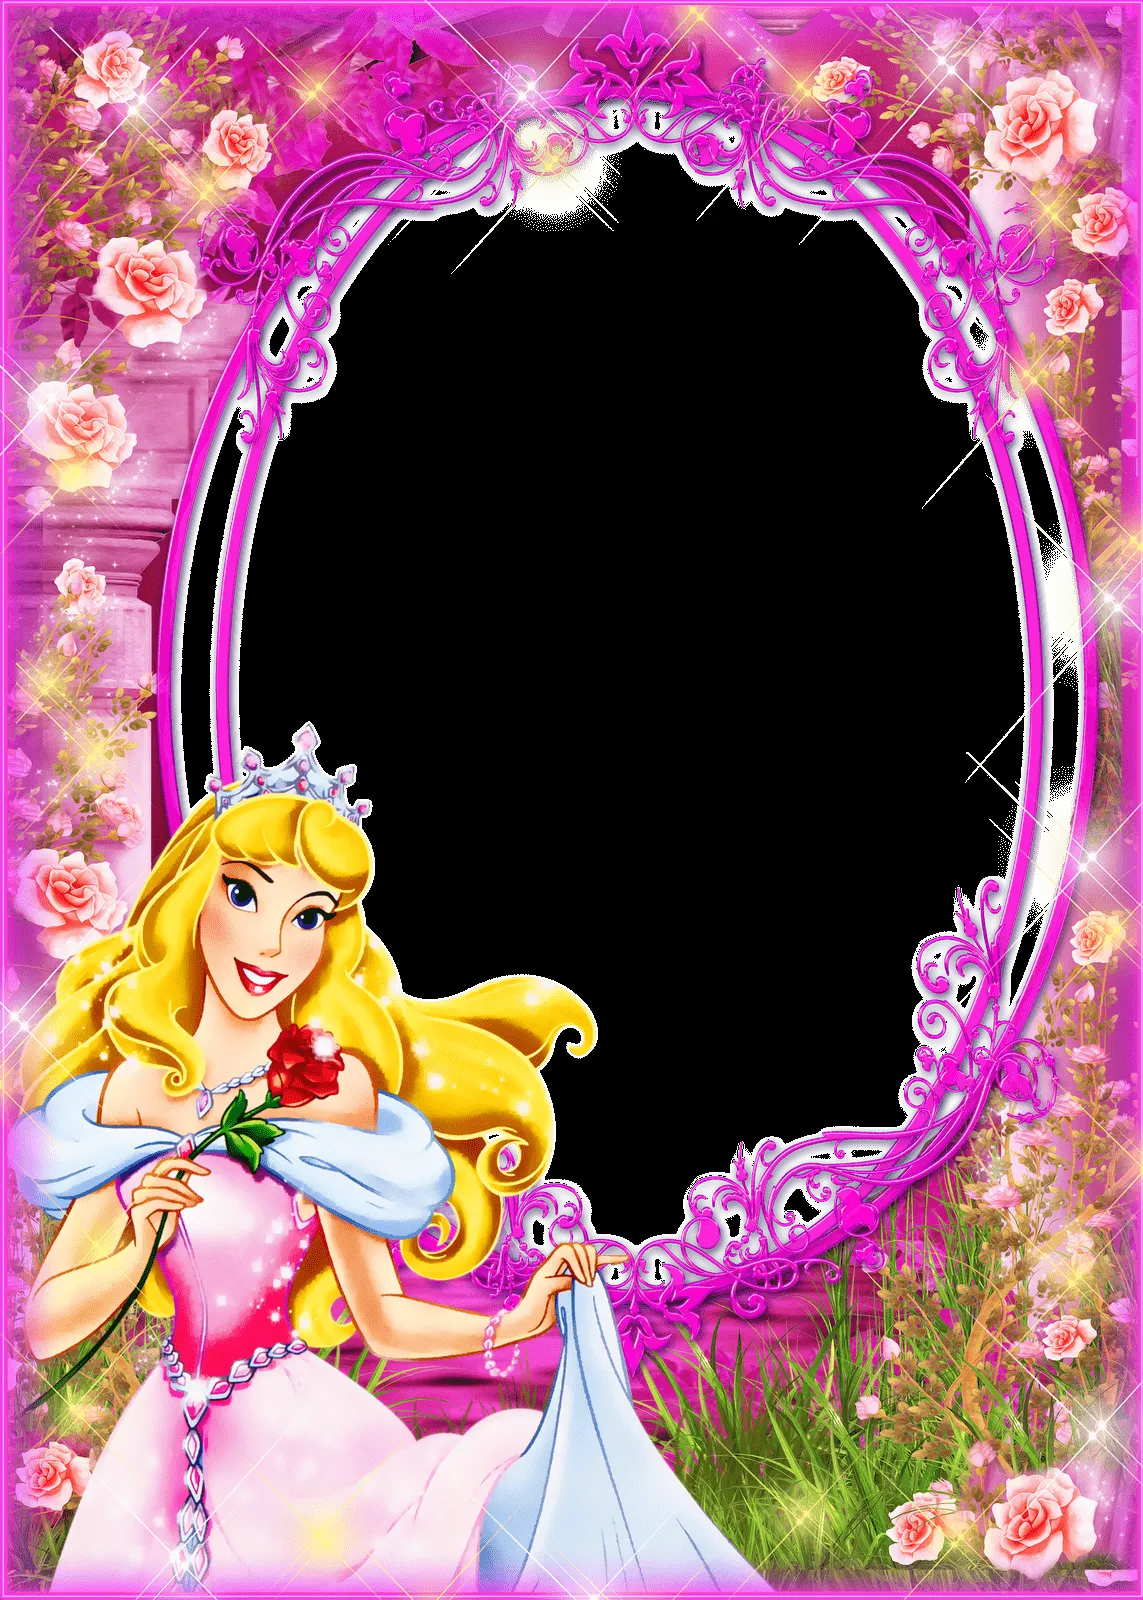 Frames PNG princesas disney e flores | Imagens para photoshop